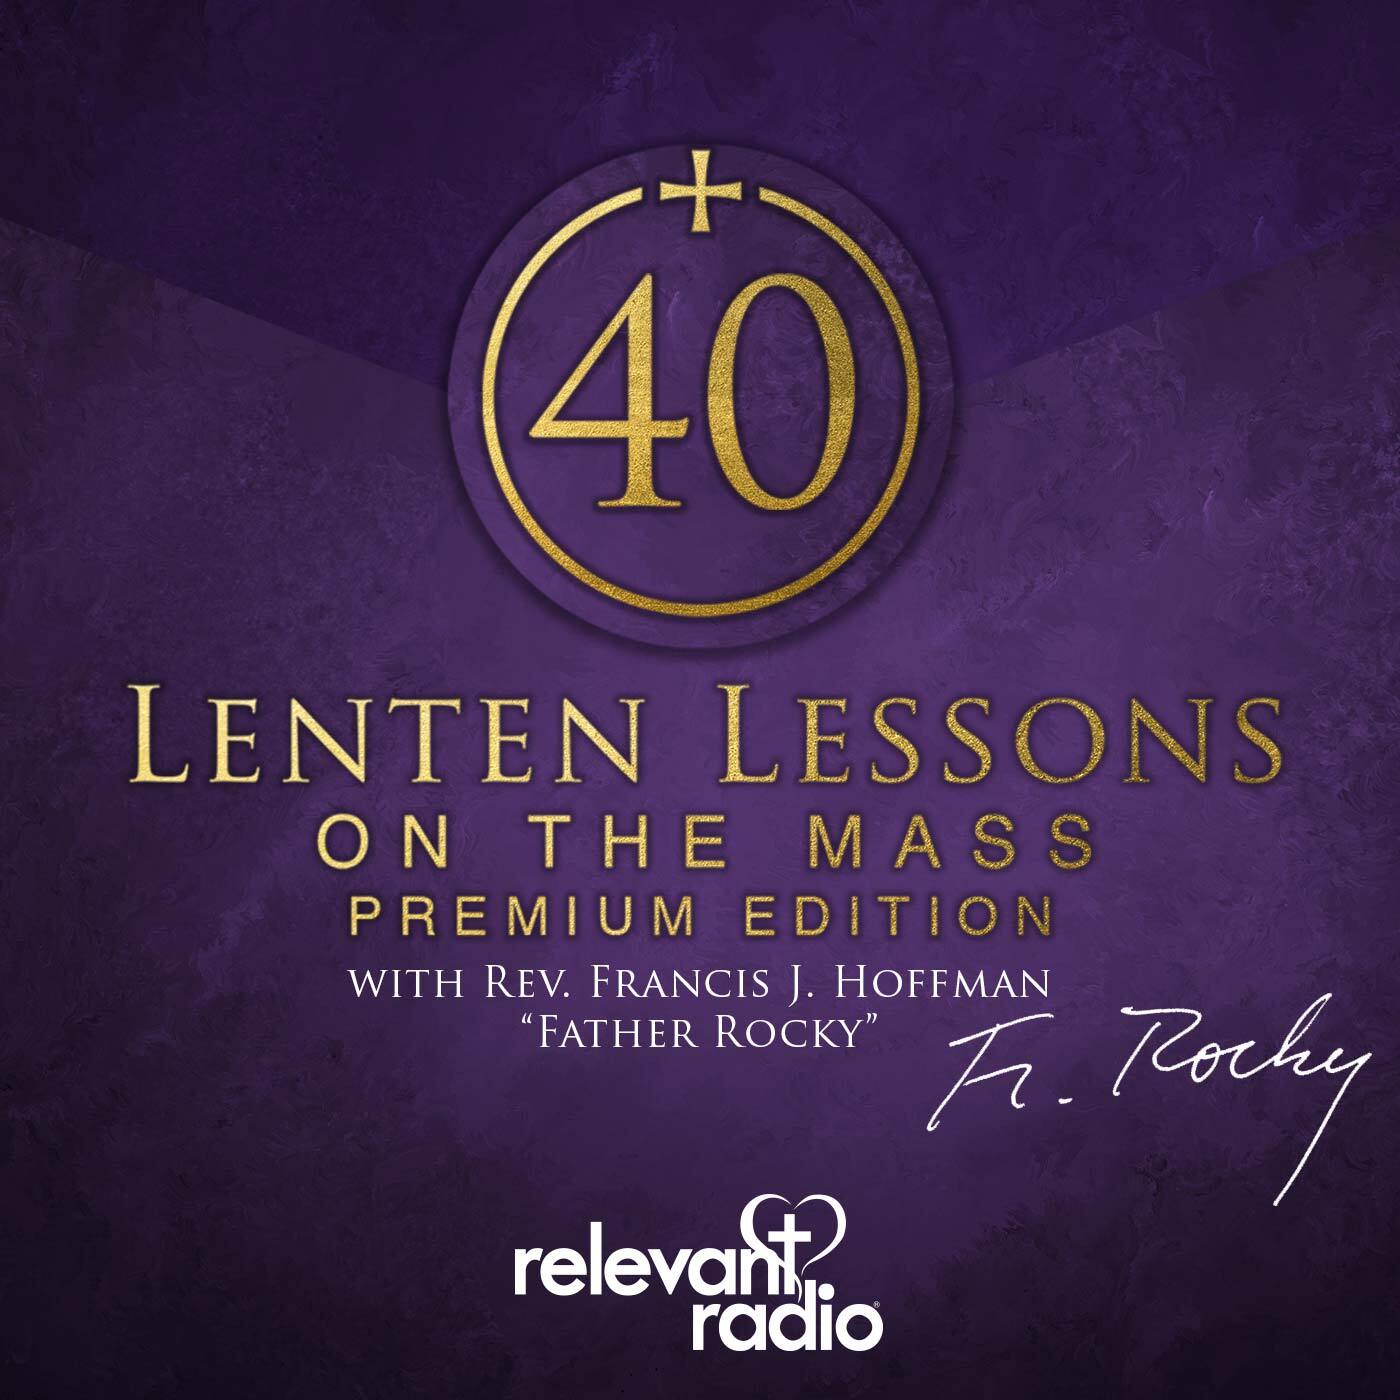 Fr. Rocky's Lenten Lessons on the Mass